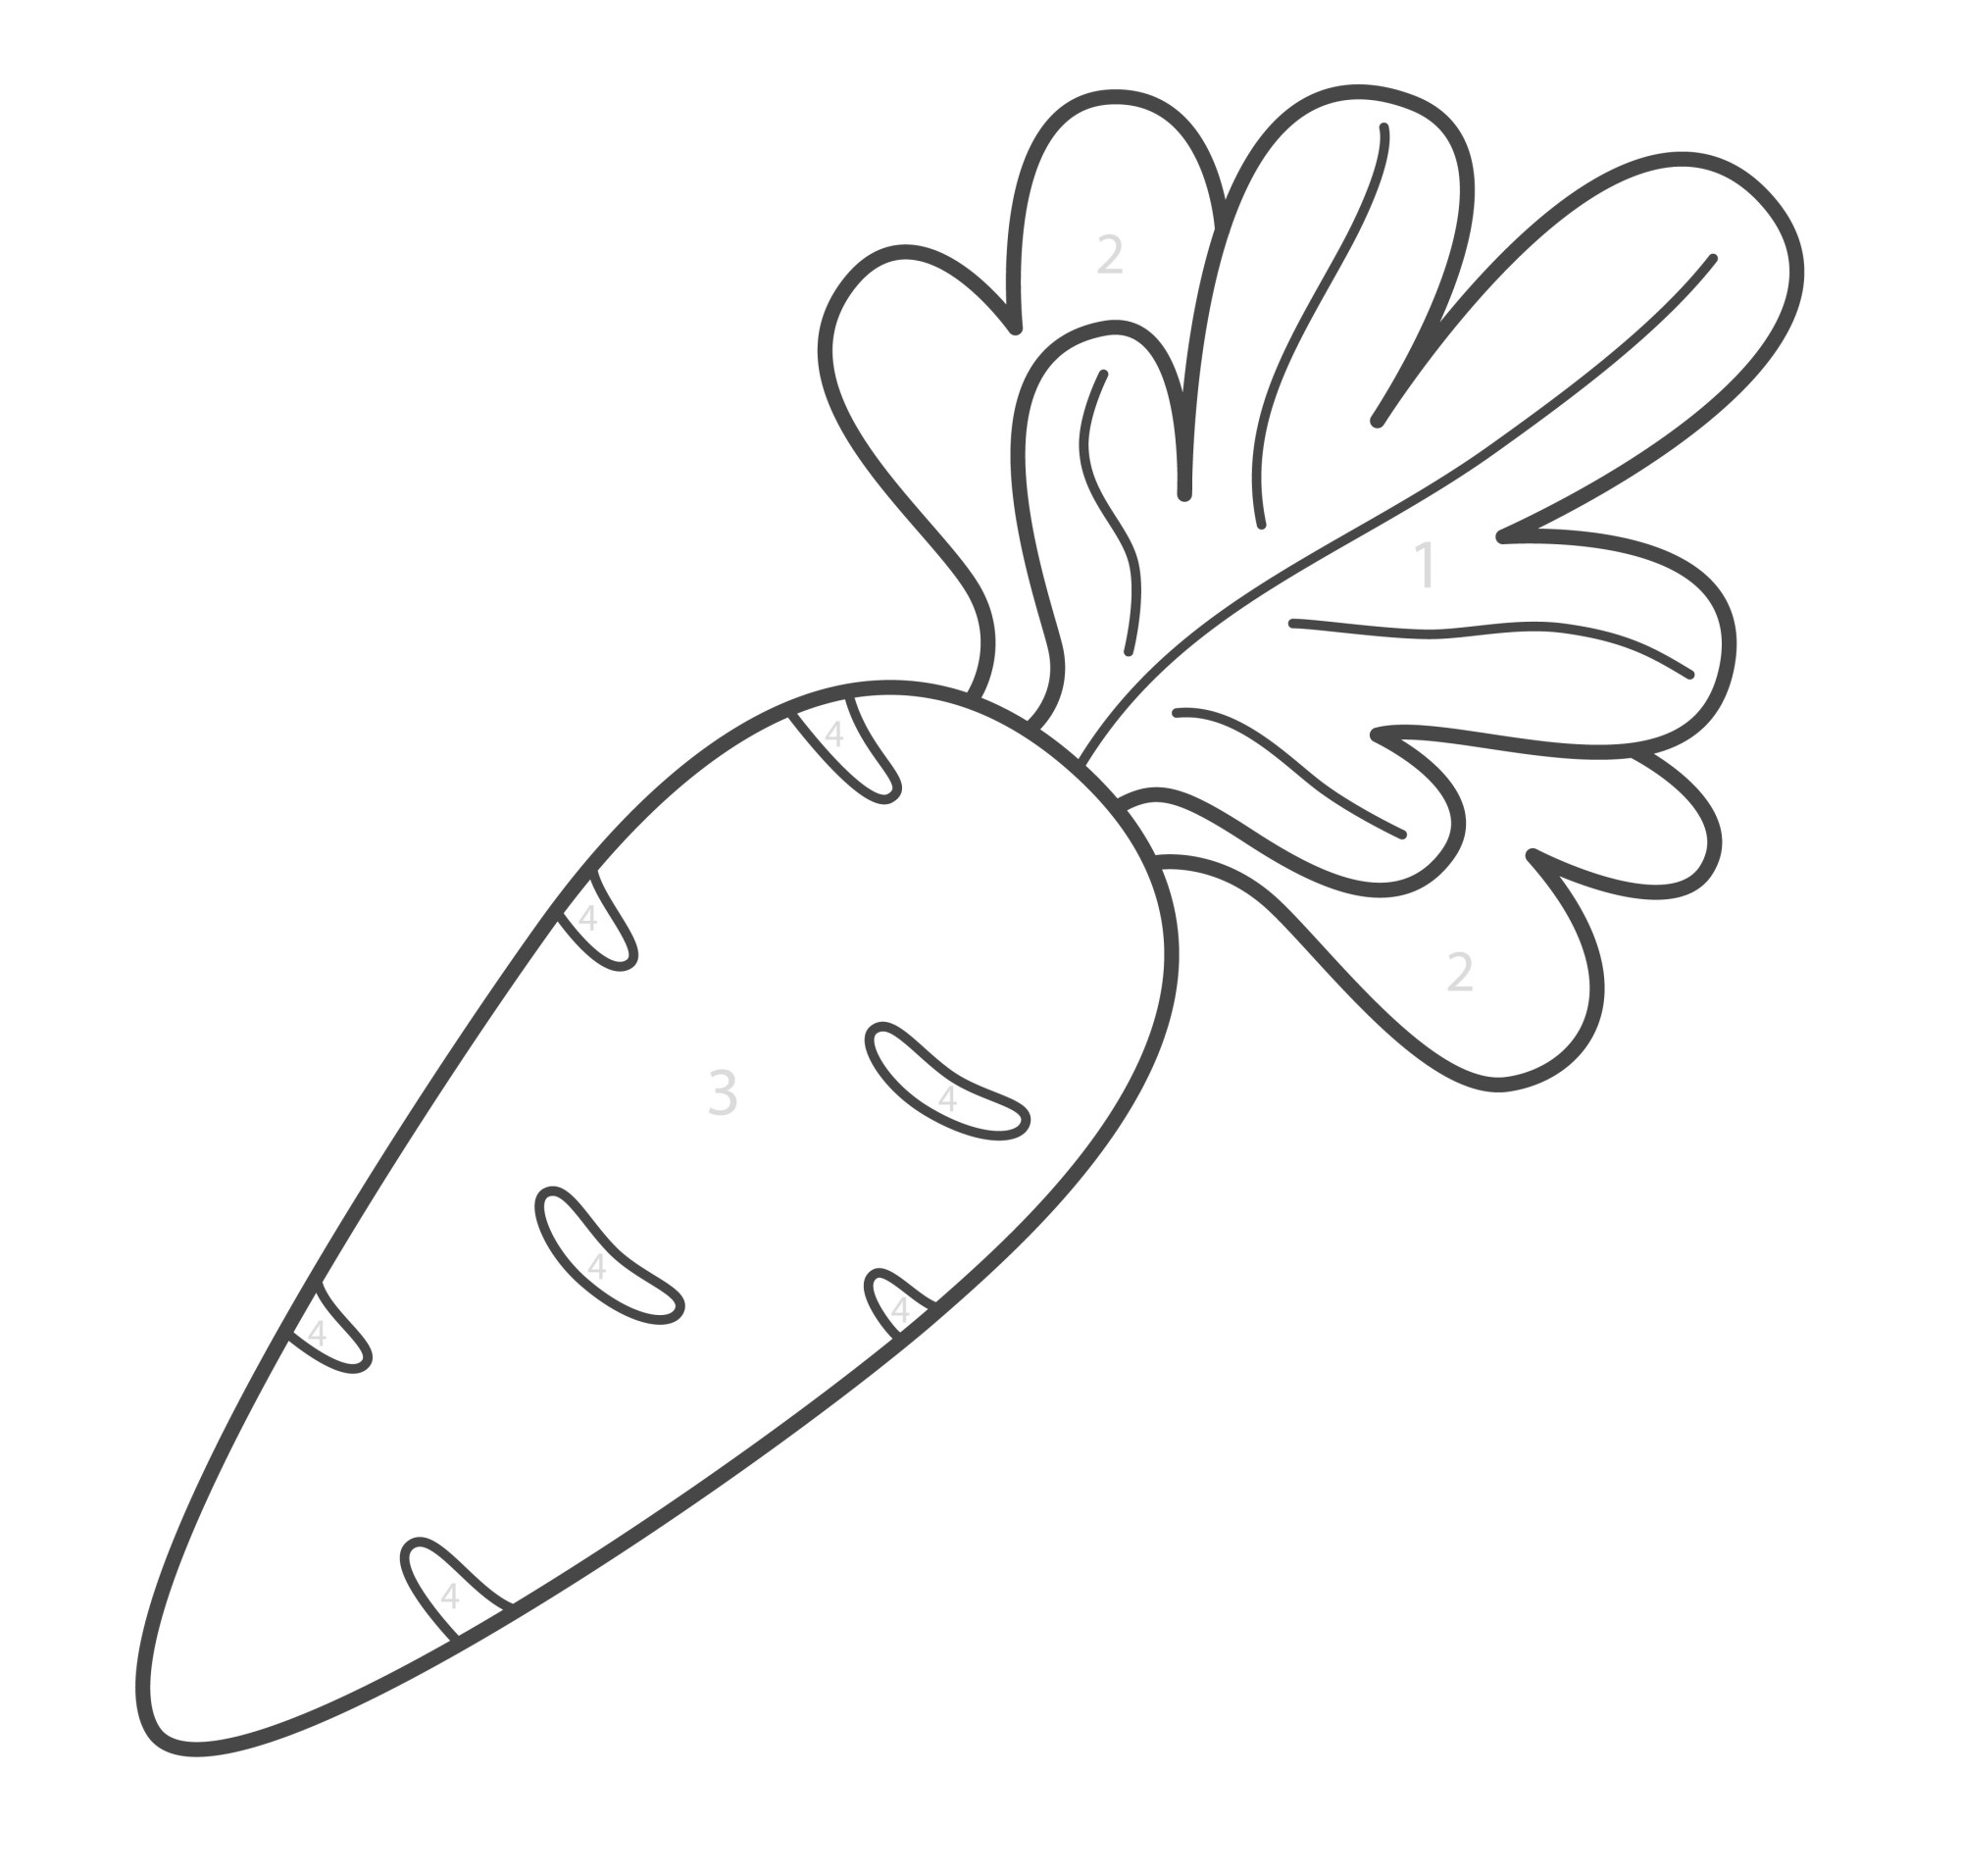 Раскраска для детей: свежая морковь с ботвой